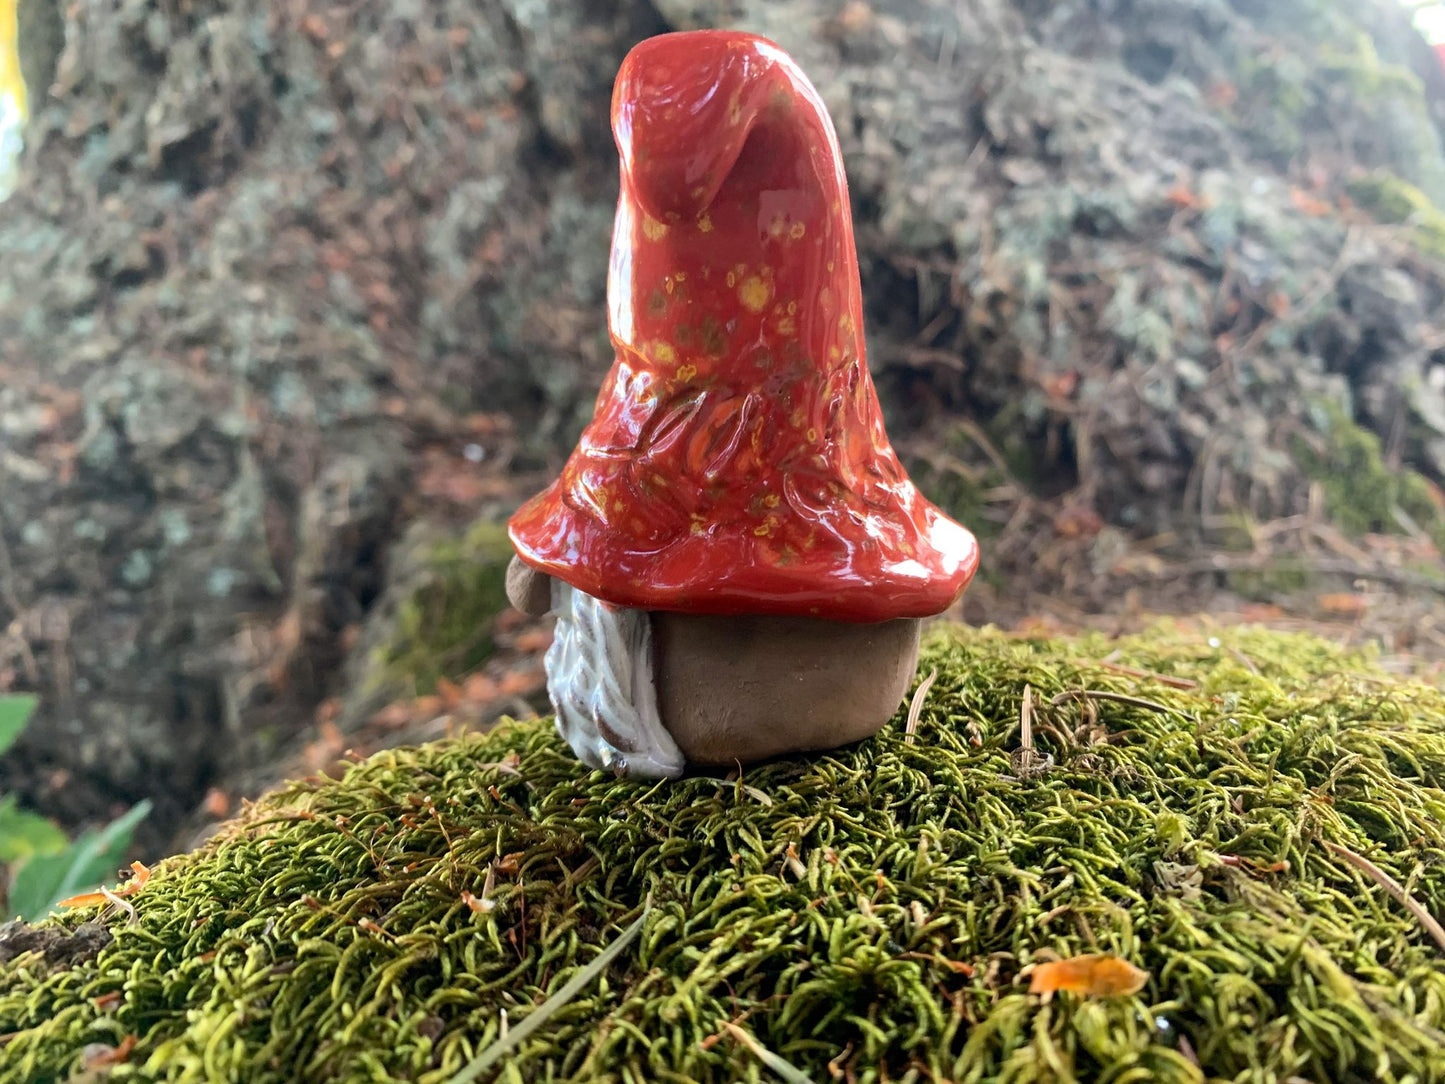 Confetti the Gnome